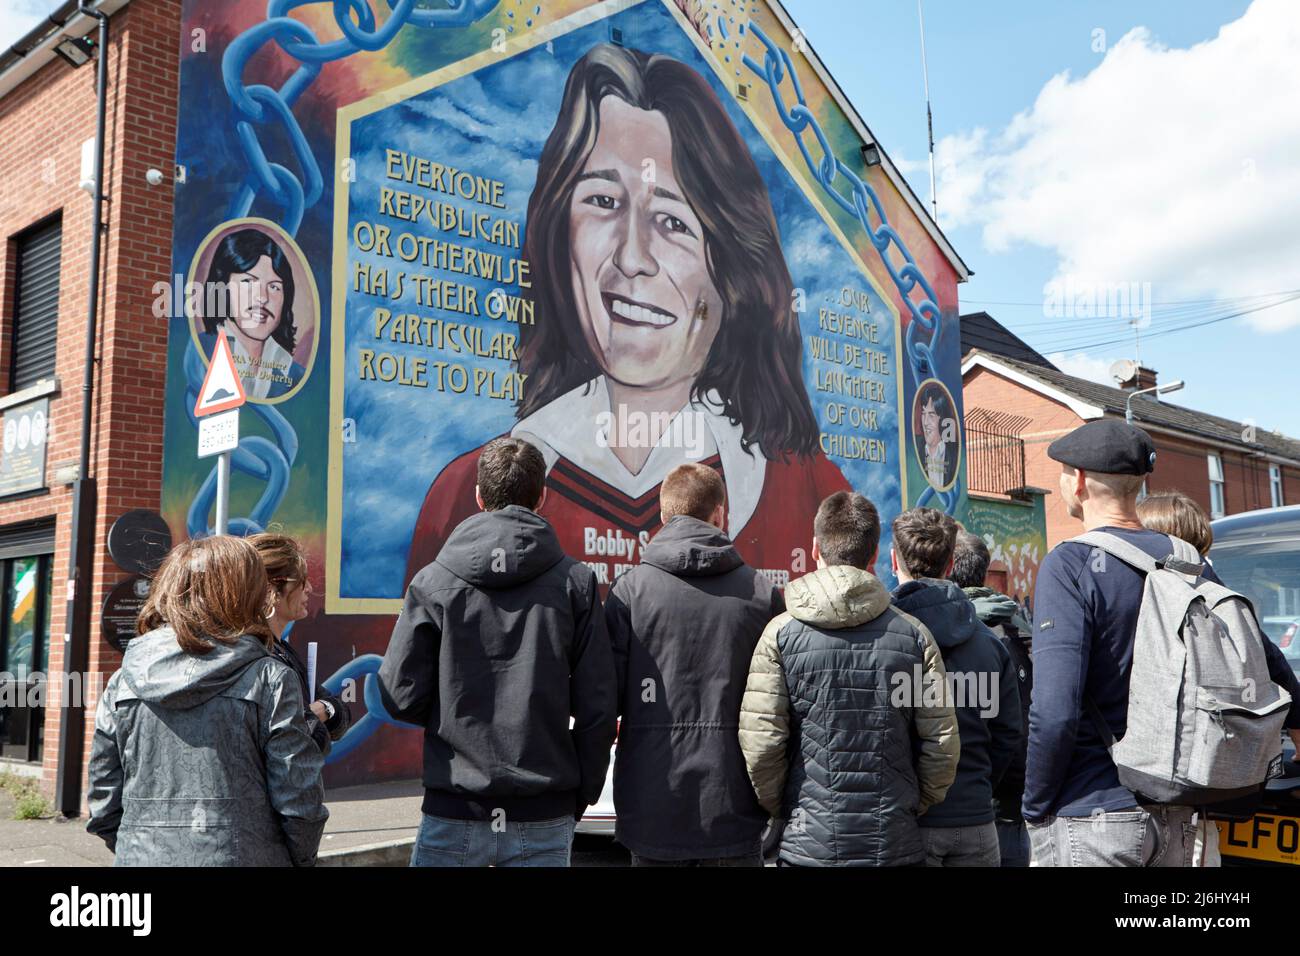 Groupe de touristes d'Espagne à la fresque de Bobby Sands sur le mur du bureau de Sinn Fein, Lower Falls Road, West Belfast, Irlande du Nord, 20th Apri Banque D'Images